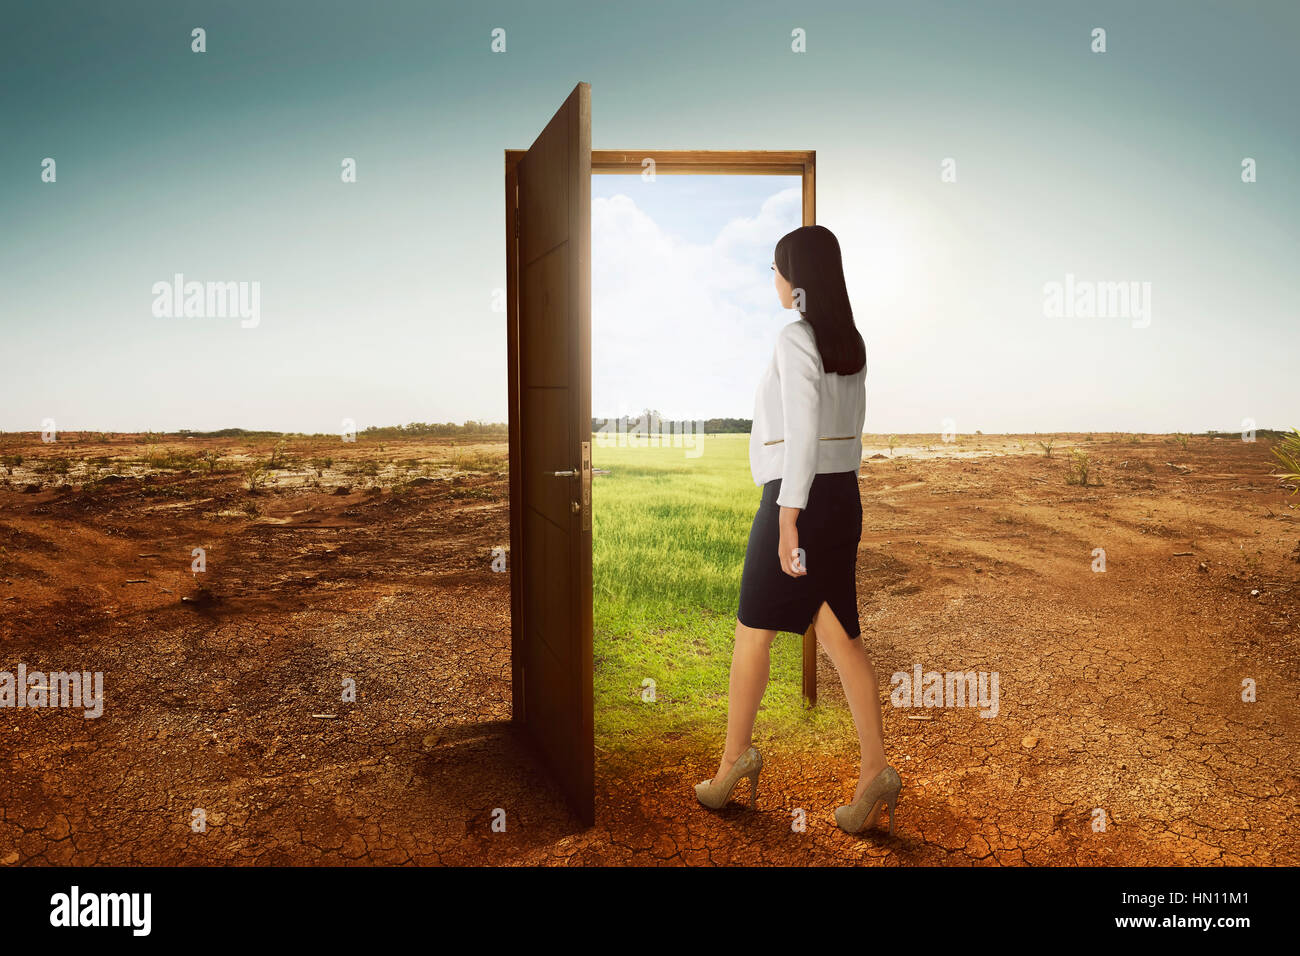 Junge asiatische Geschäftsfrau zu Fuß auf die offene Tür nach grünen Umgebung am gebrochenen Land Hintergrund Stockfoto